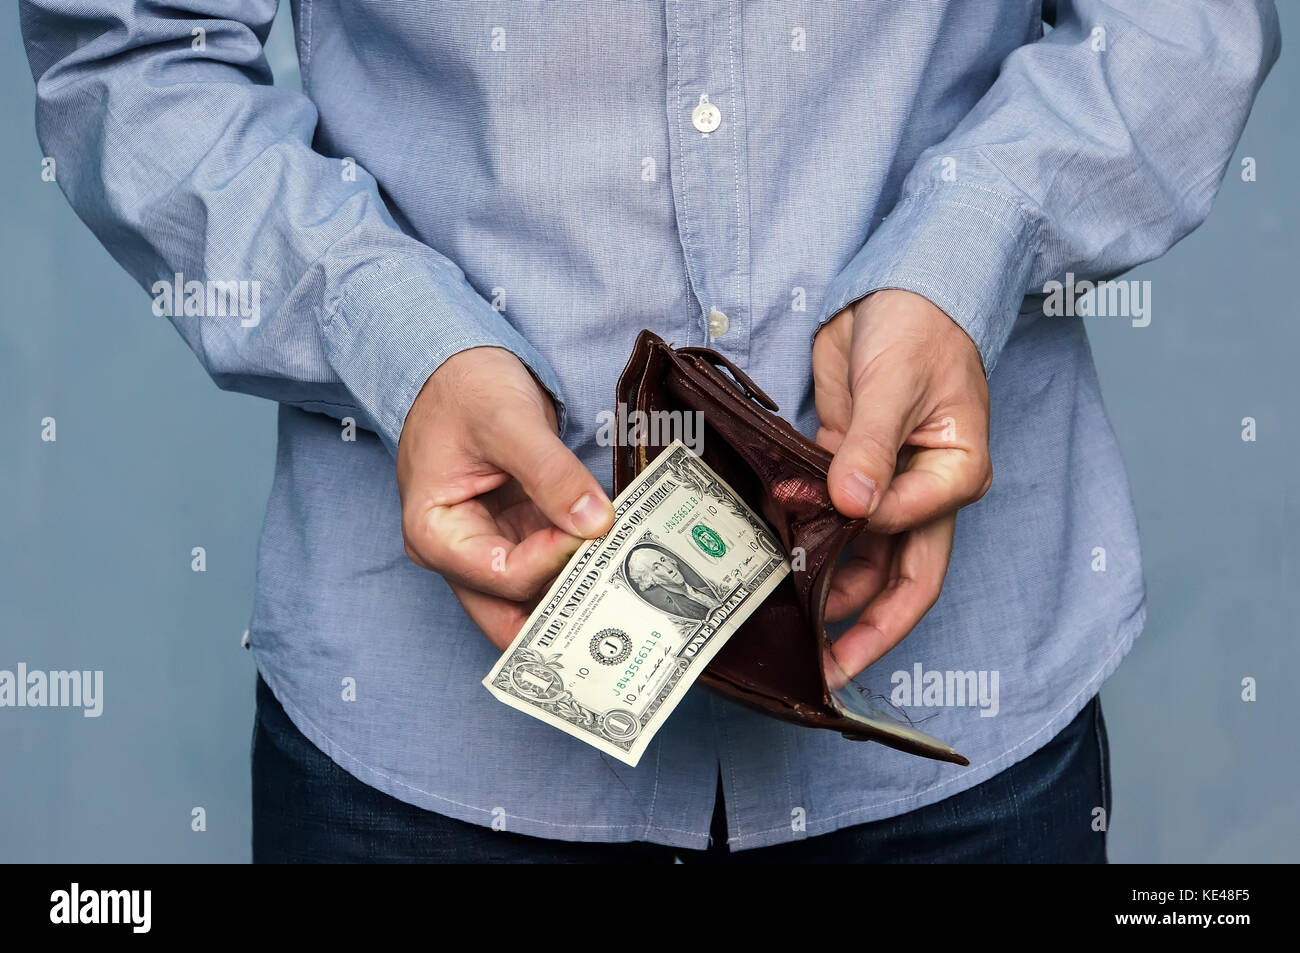 L'uomo ottiene denaro dal portafogli. mani close-up tenendo un dollaro e un portafoglio in pelle. la povertà e la disoccupazione. Foto Stock